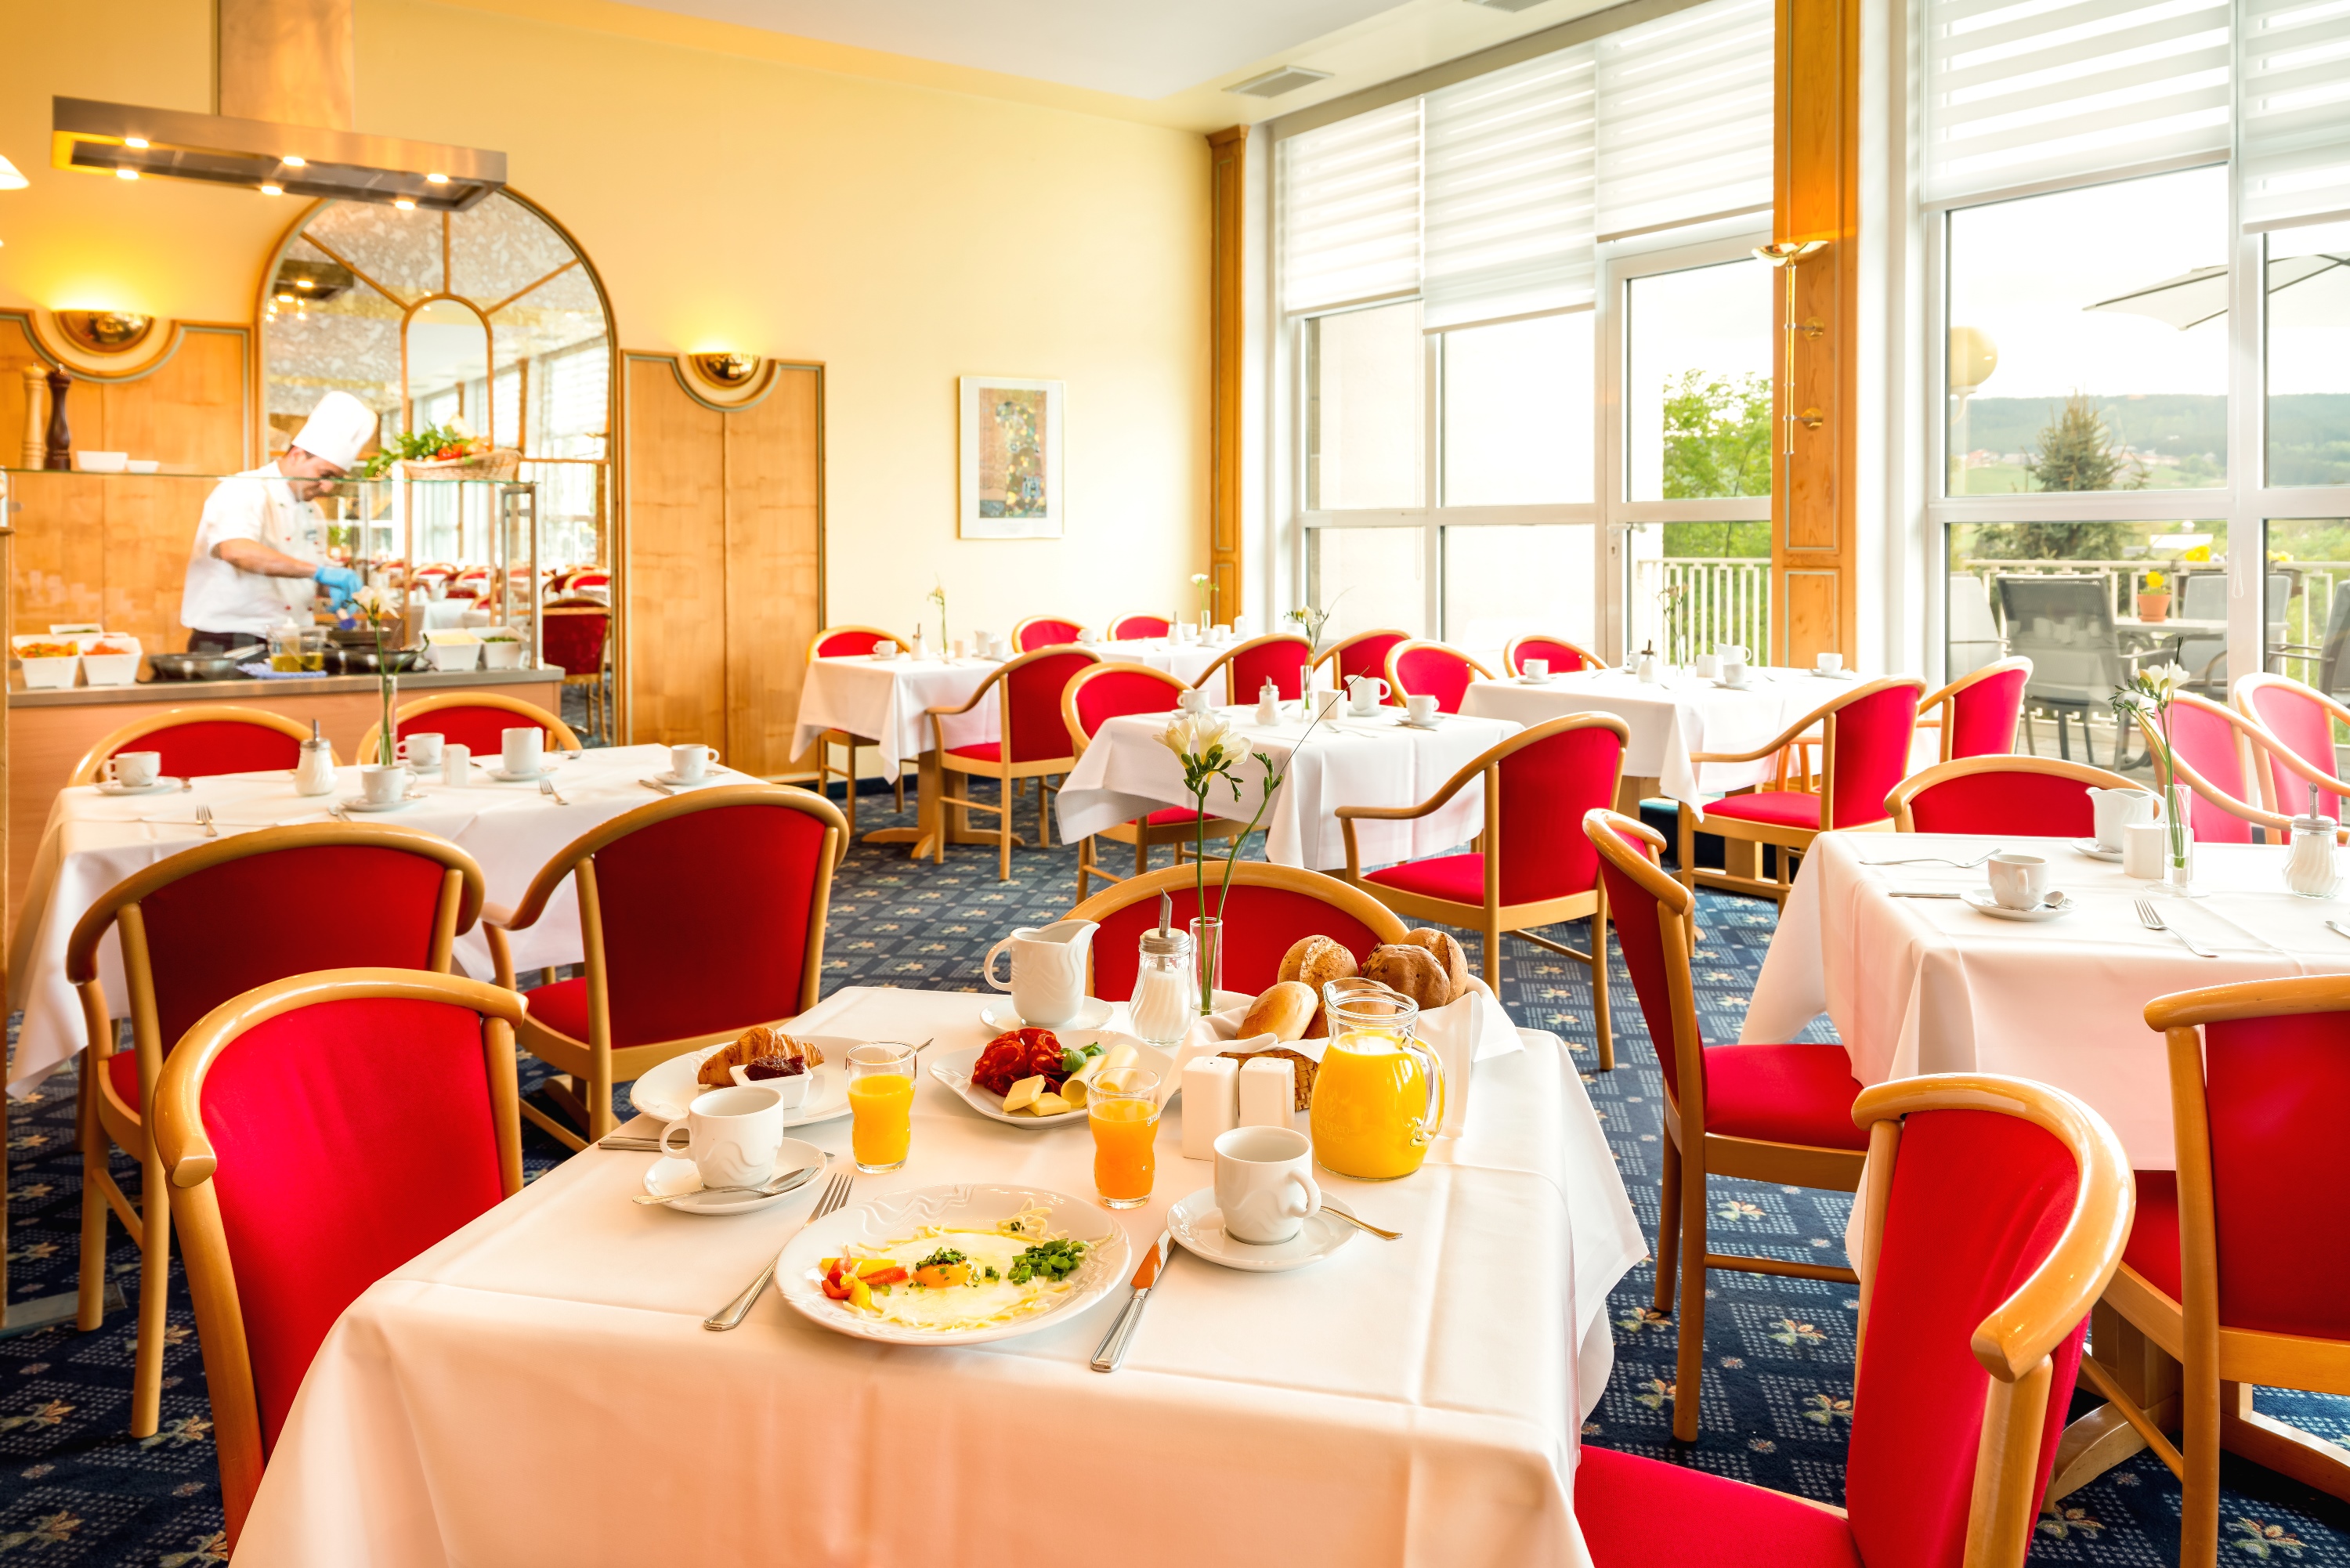 Halbpensionsrestaurant, Best Western Ahorn Hotel Oberwiesthal.